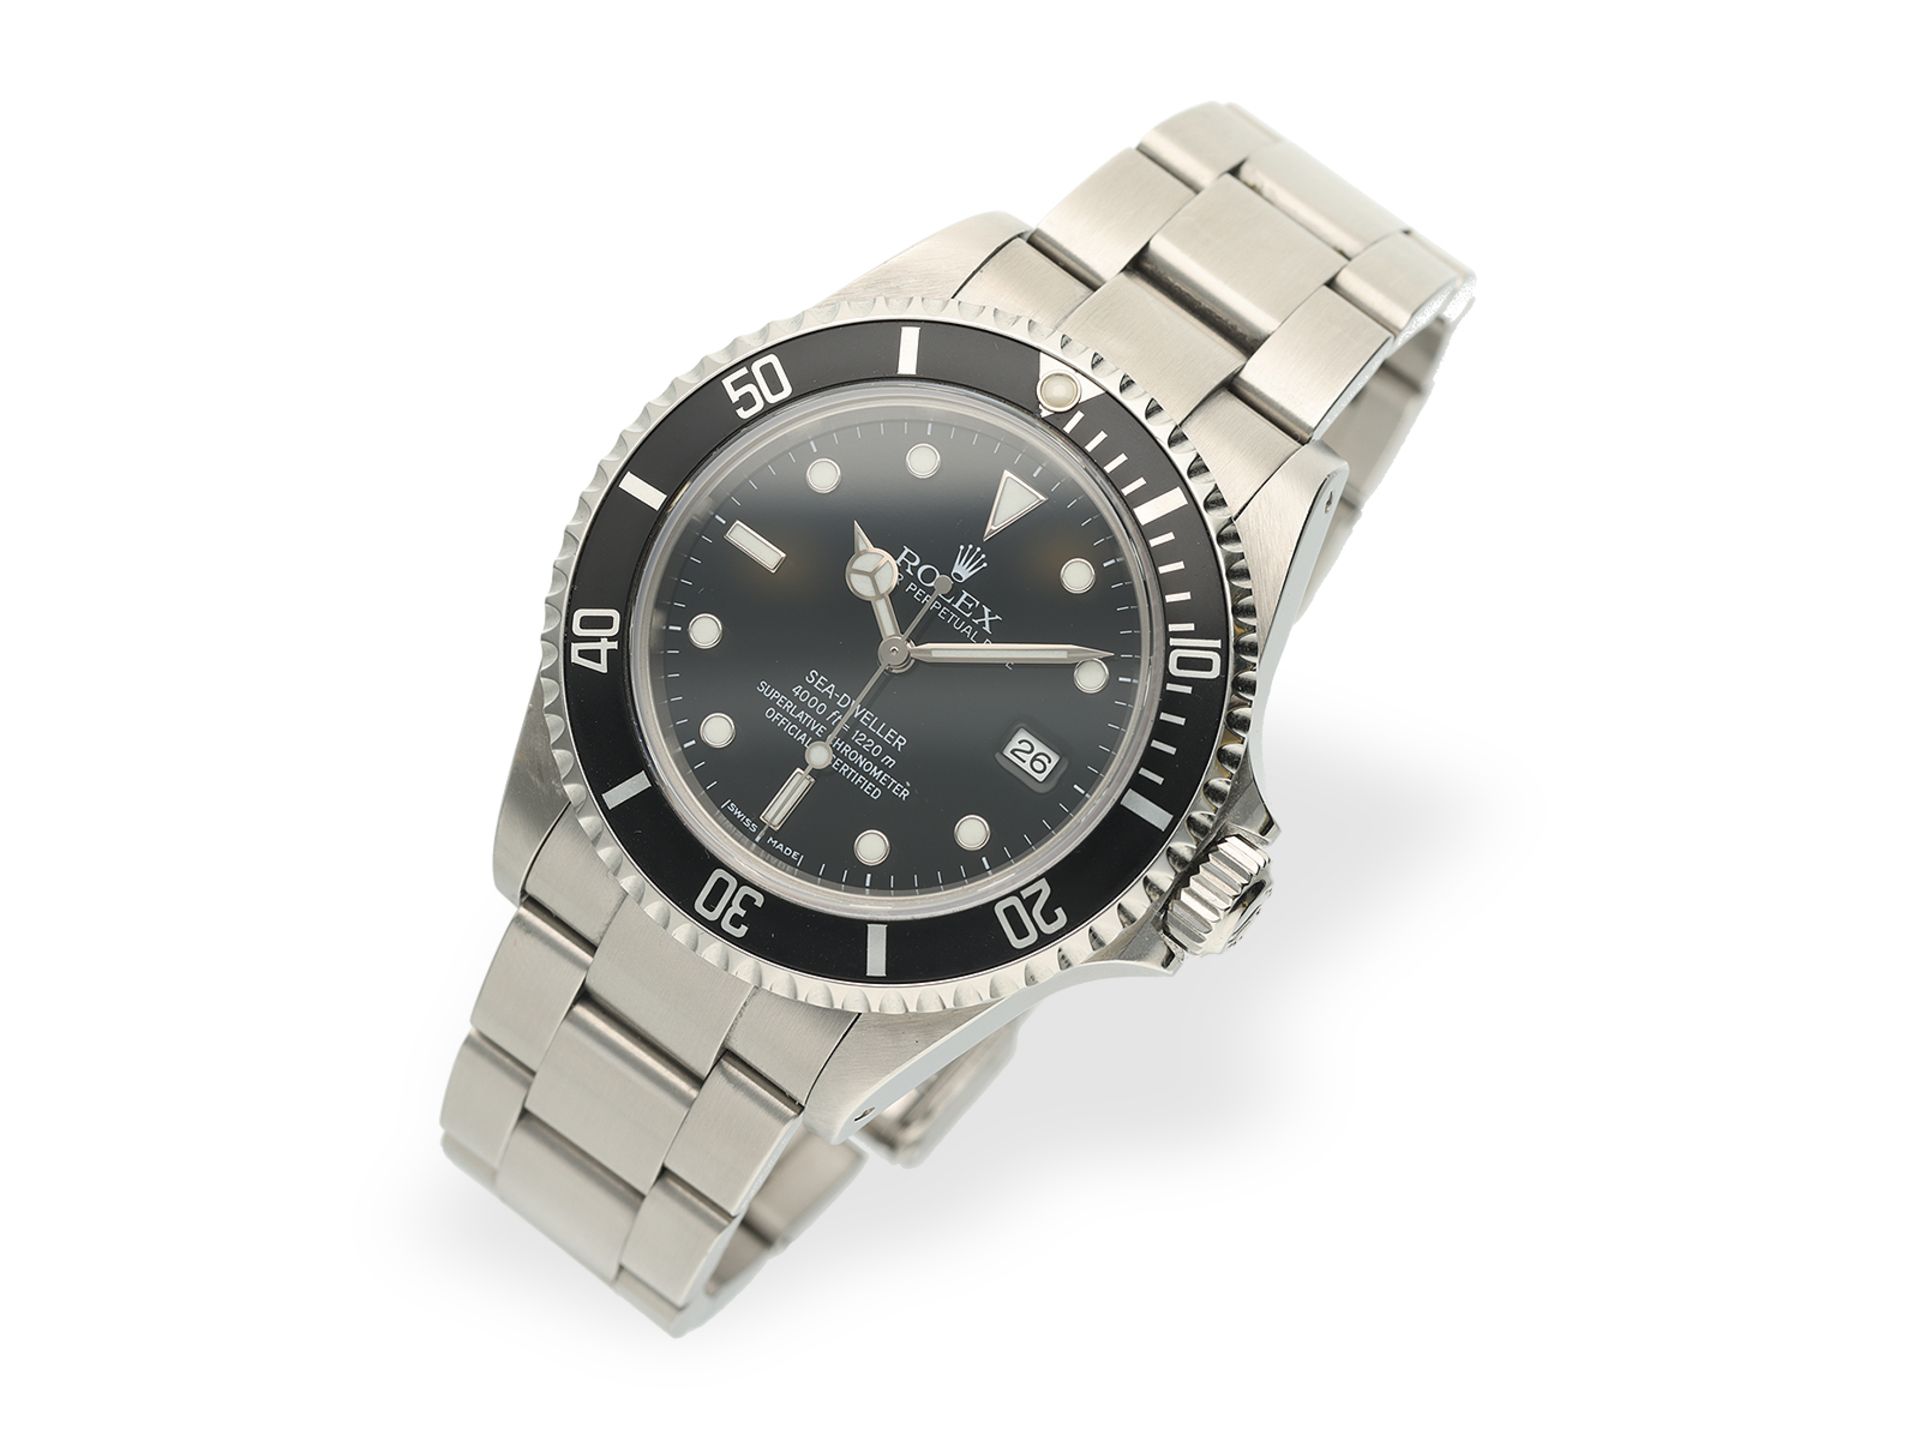 Armbanduhr: Rolex Sea-Dweller REF. 16600, Stahl, Box & Papiere, 2002/2003 - Bild 10 aus 10